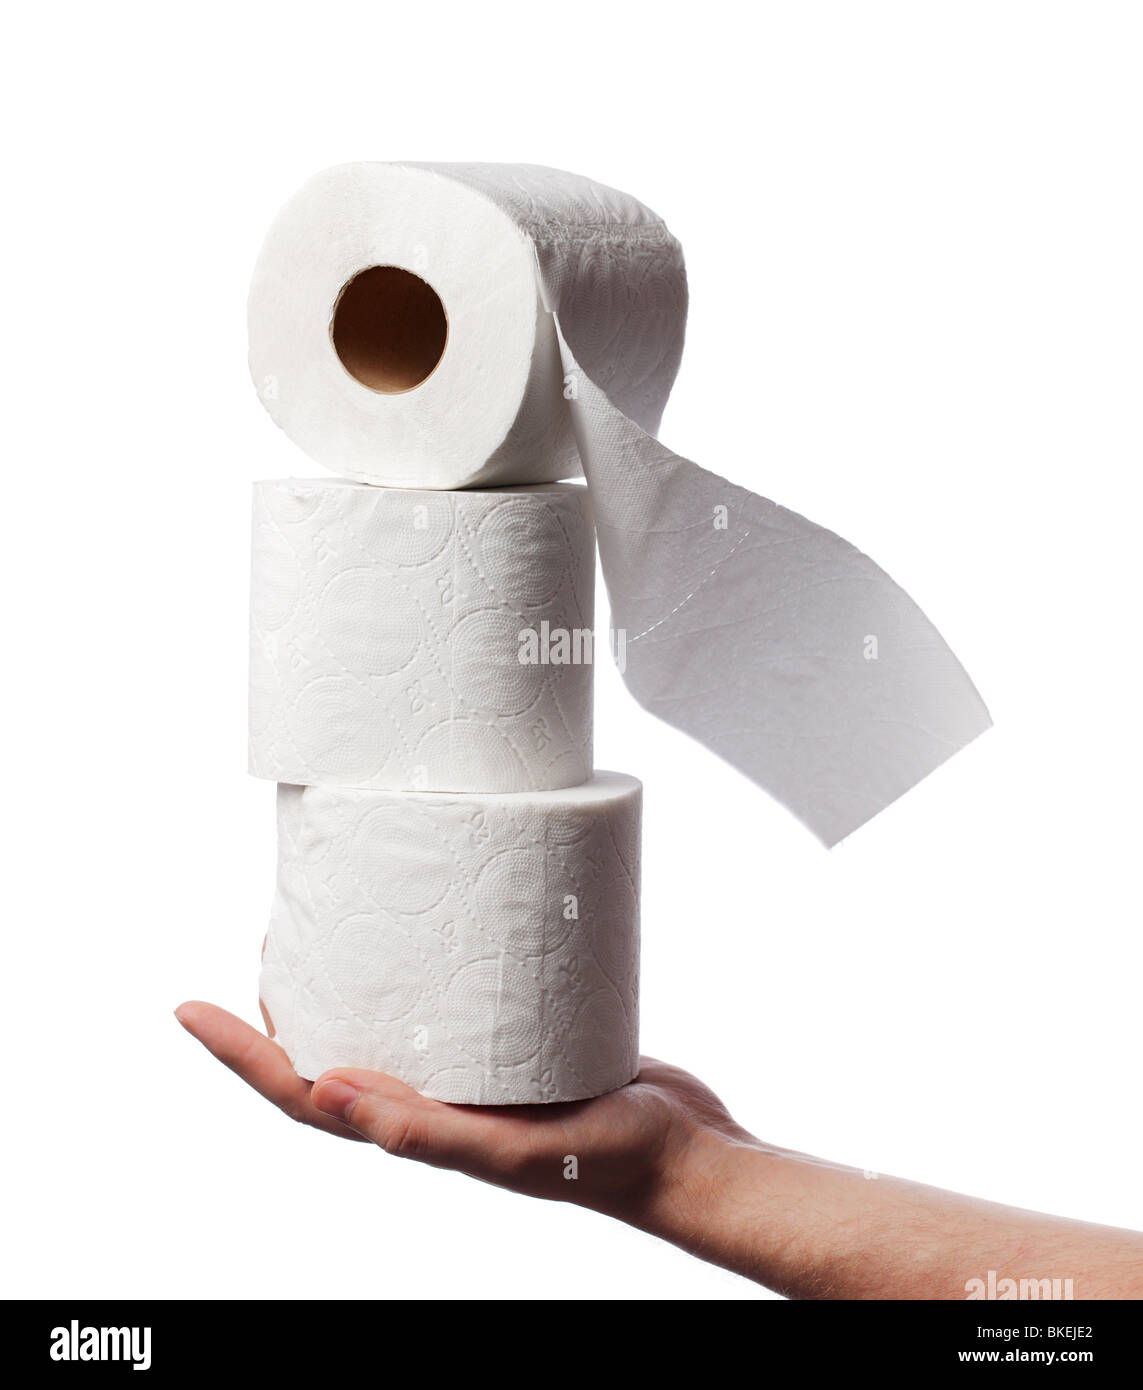 Homme tenant trois rouleaux de papier toilette blanc sur sa main Photo Stock  - Alamy